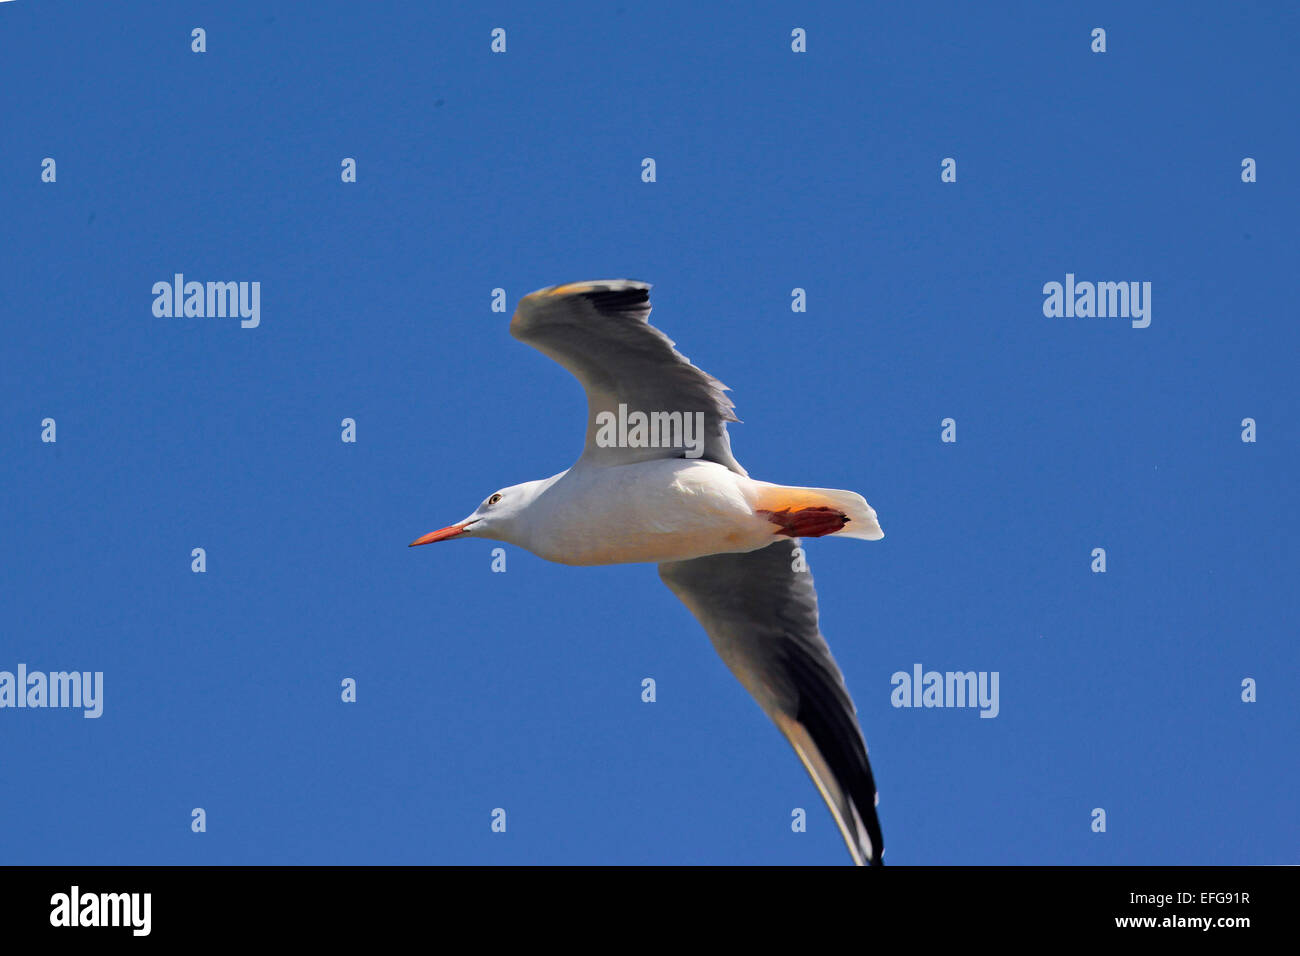 Slender Billed Gull (Chroicocephalus genei) in flight in the blue sky Stock Photo